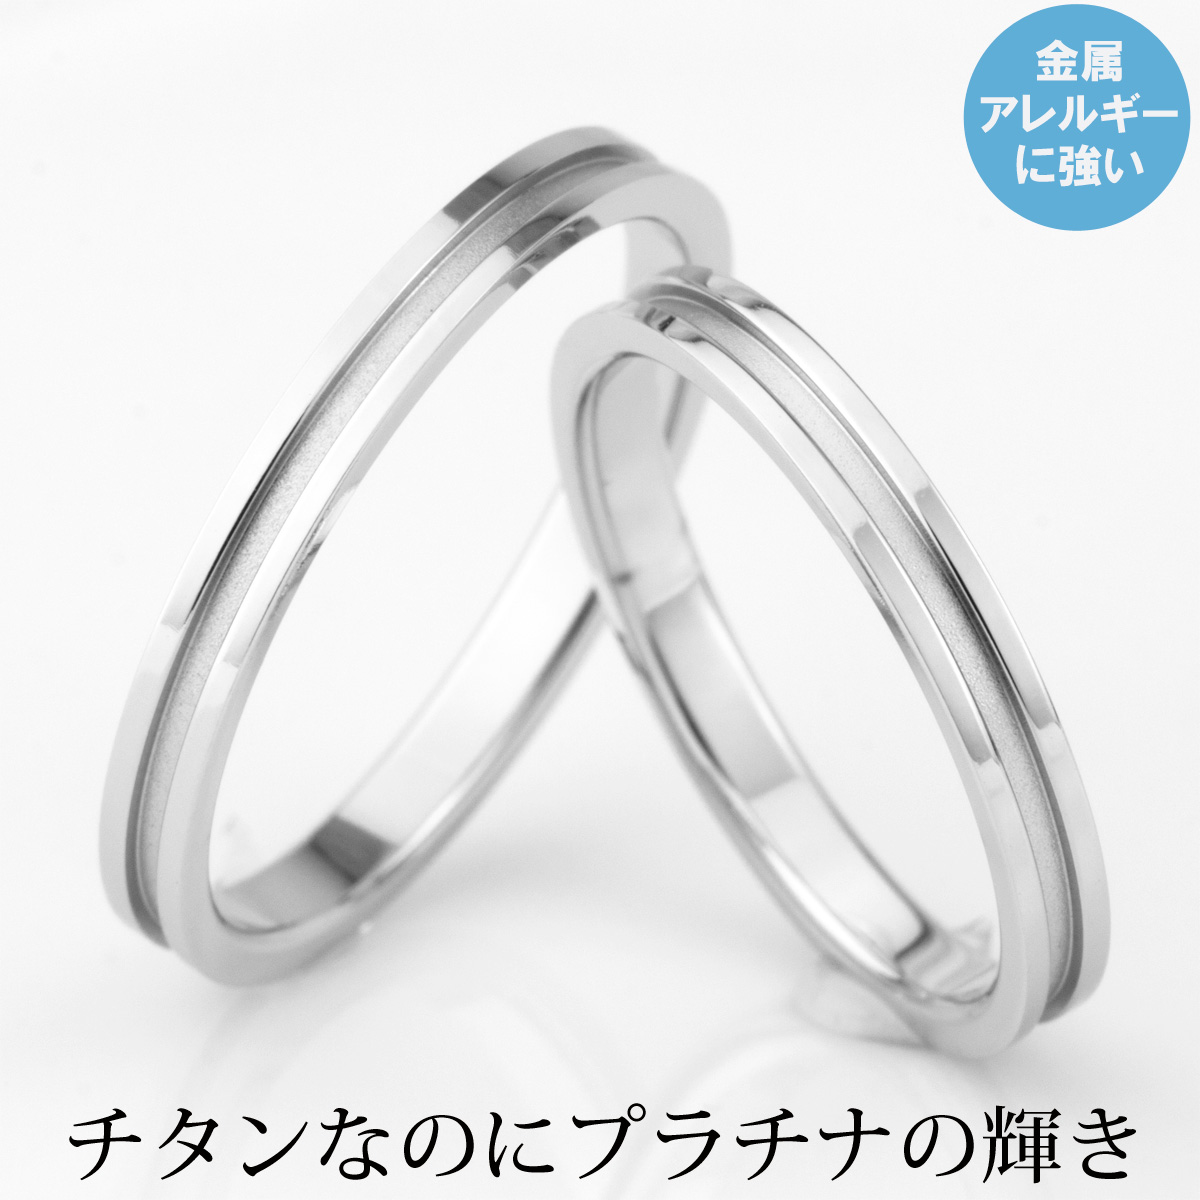 結婚指輪 ペアリング チタン マリッジリング 日本製 鏡面仕上げ ペアセット プラチナ イオンプレーティング加工 刻印無料(文字彫り)  金属アレルギー対応 アレルギーフリー 安心 ブライダルリング 刻印可能 安い | e-宝石屋